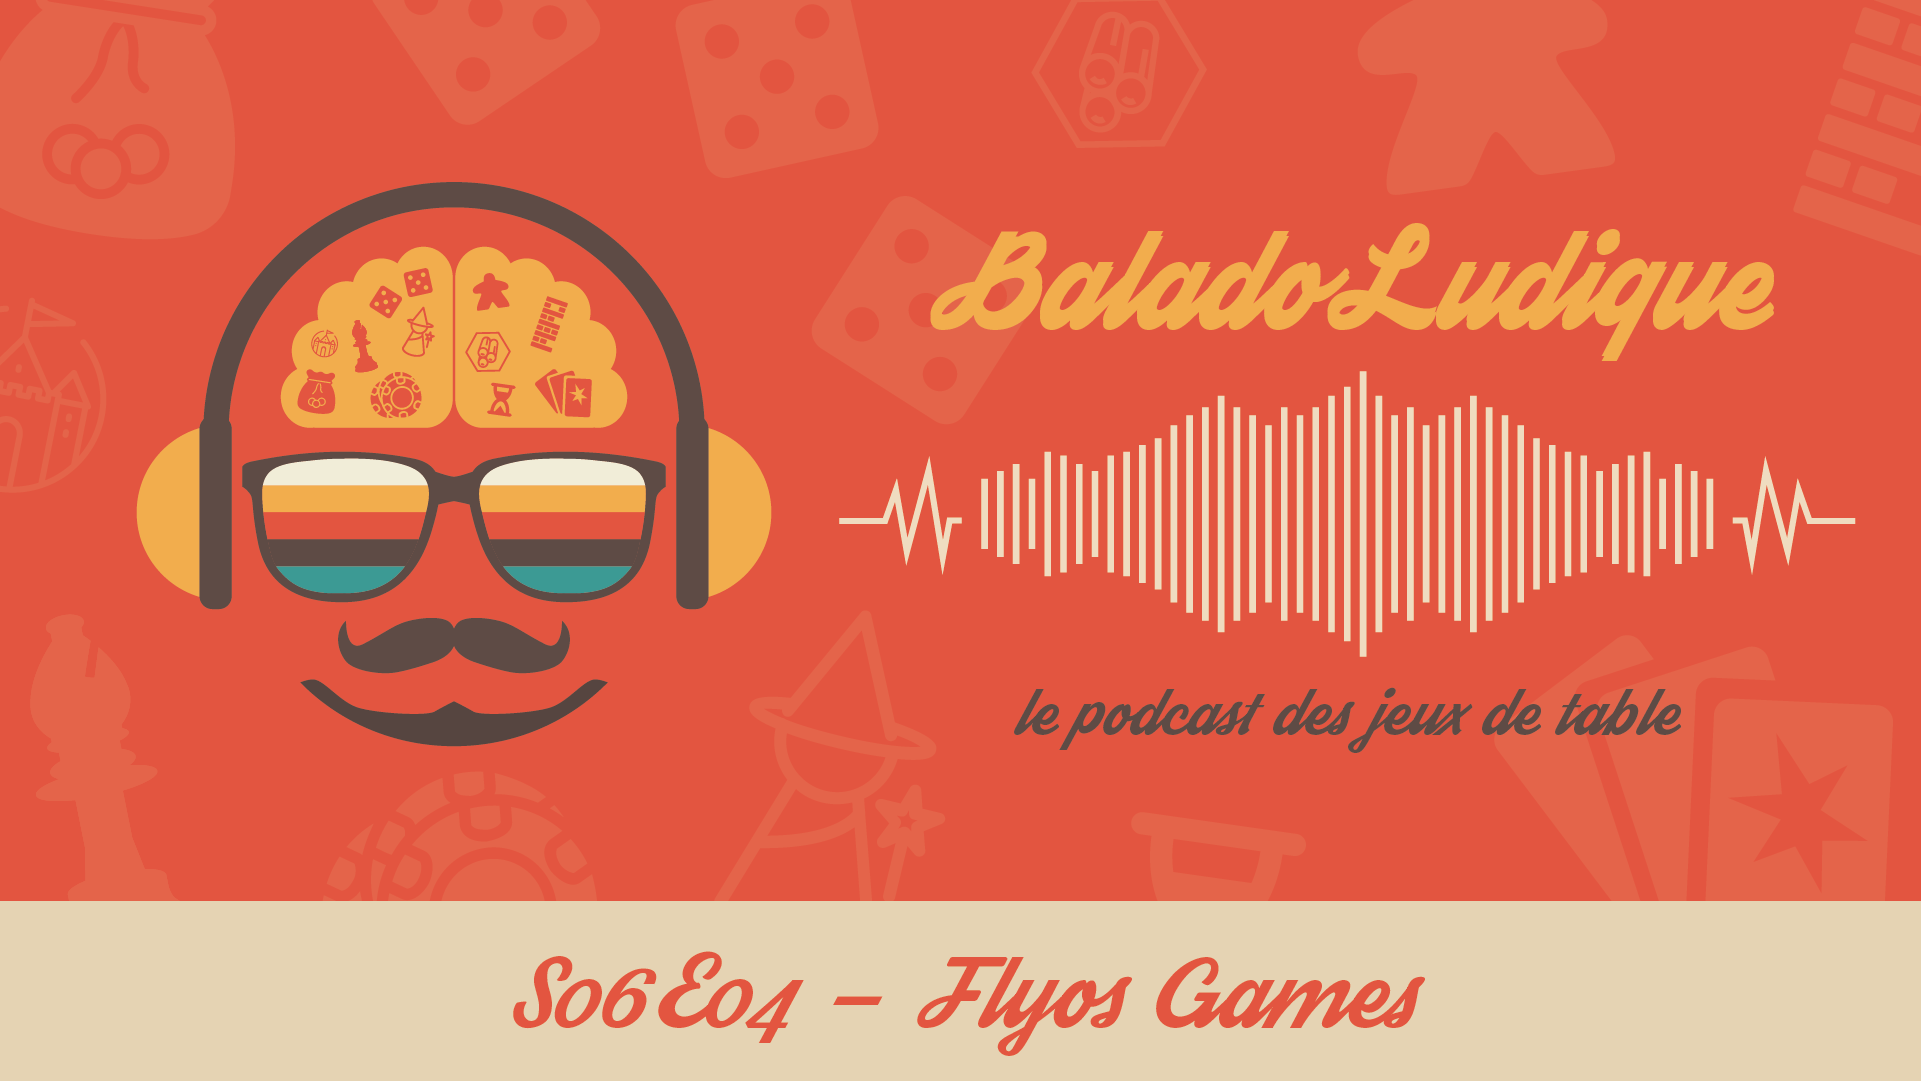 Flyos Games - BaladoLudique - s06-e04